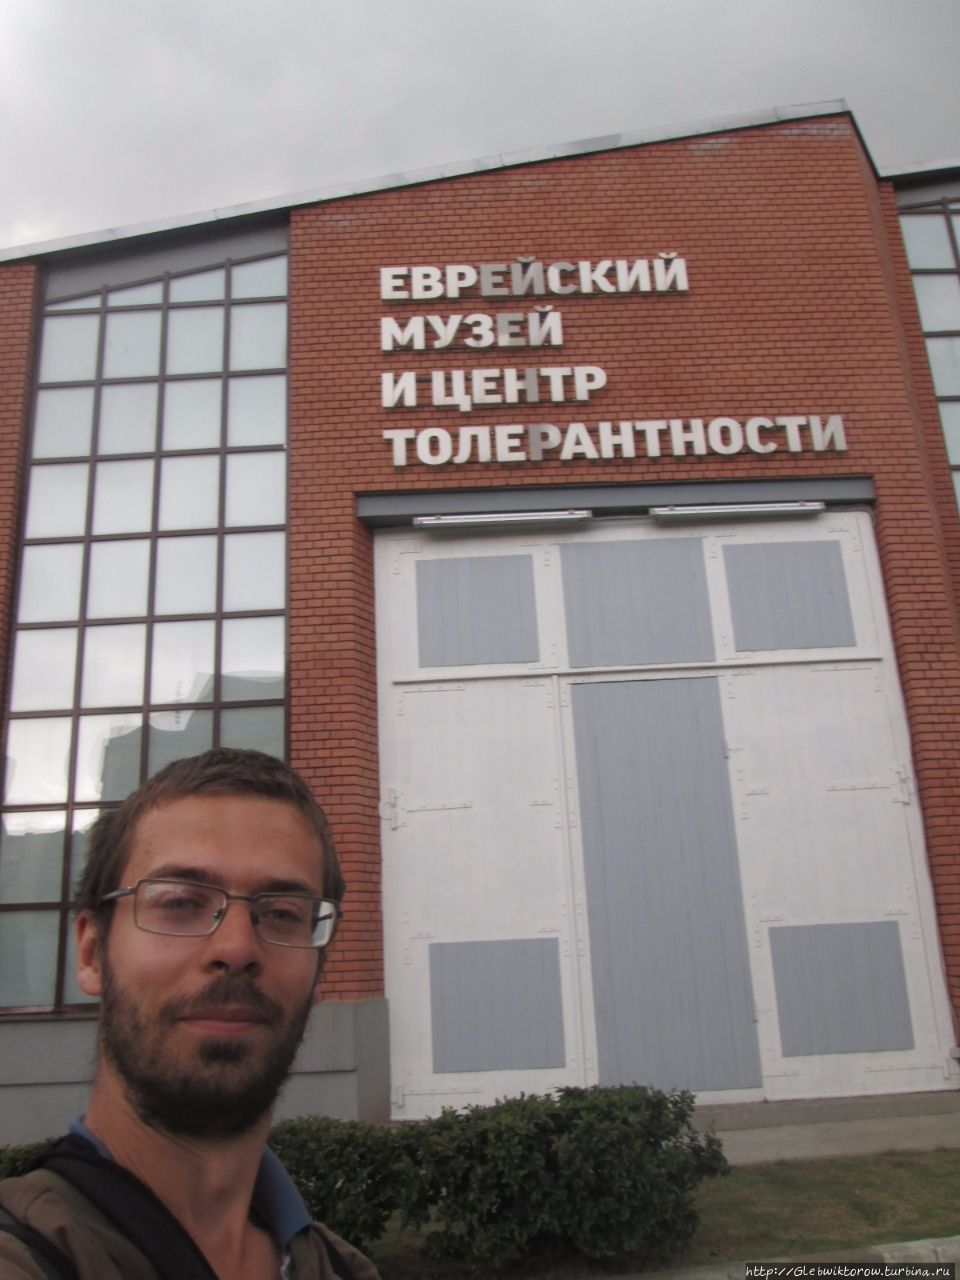 Еврейский музей и центр толерантности Москва, Россия